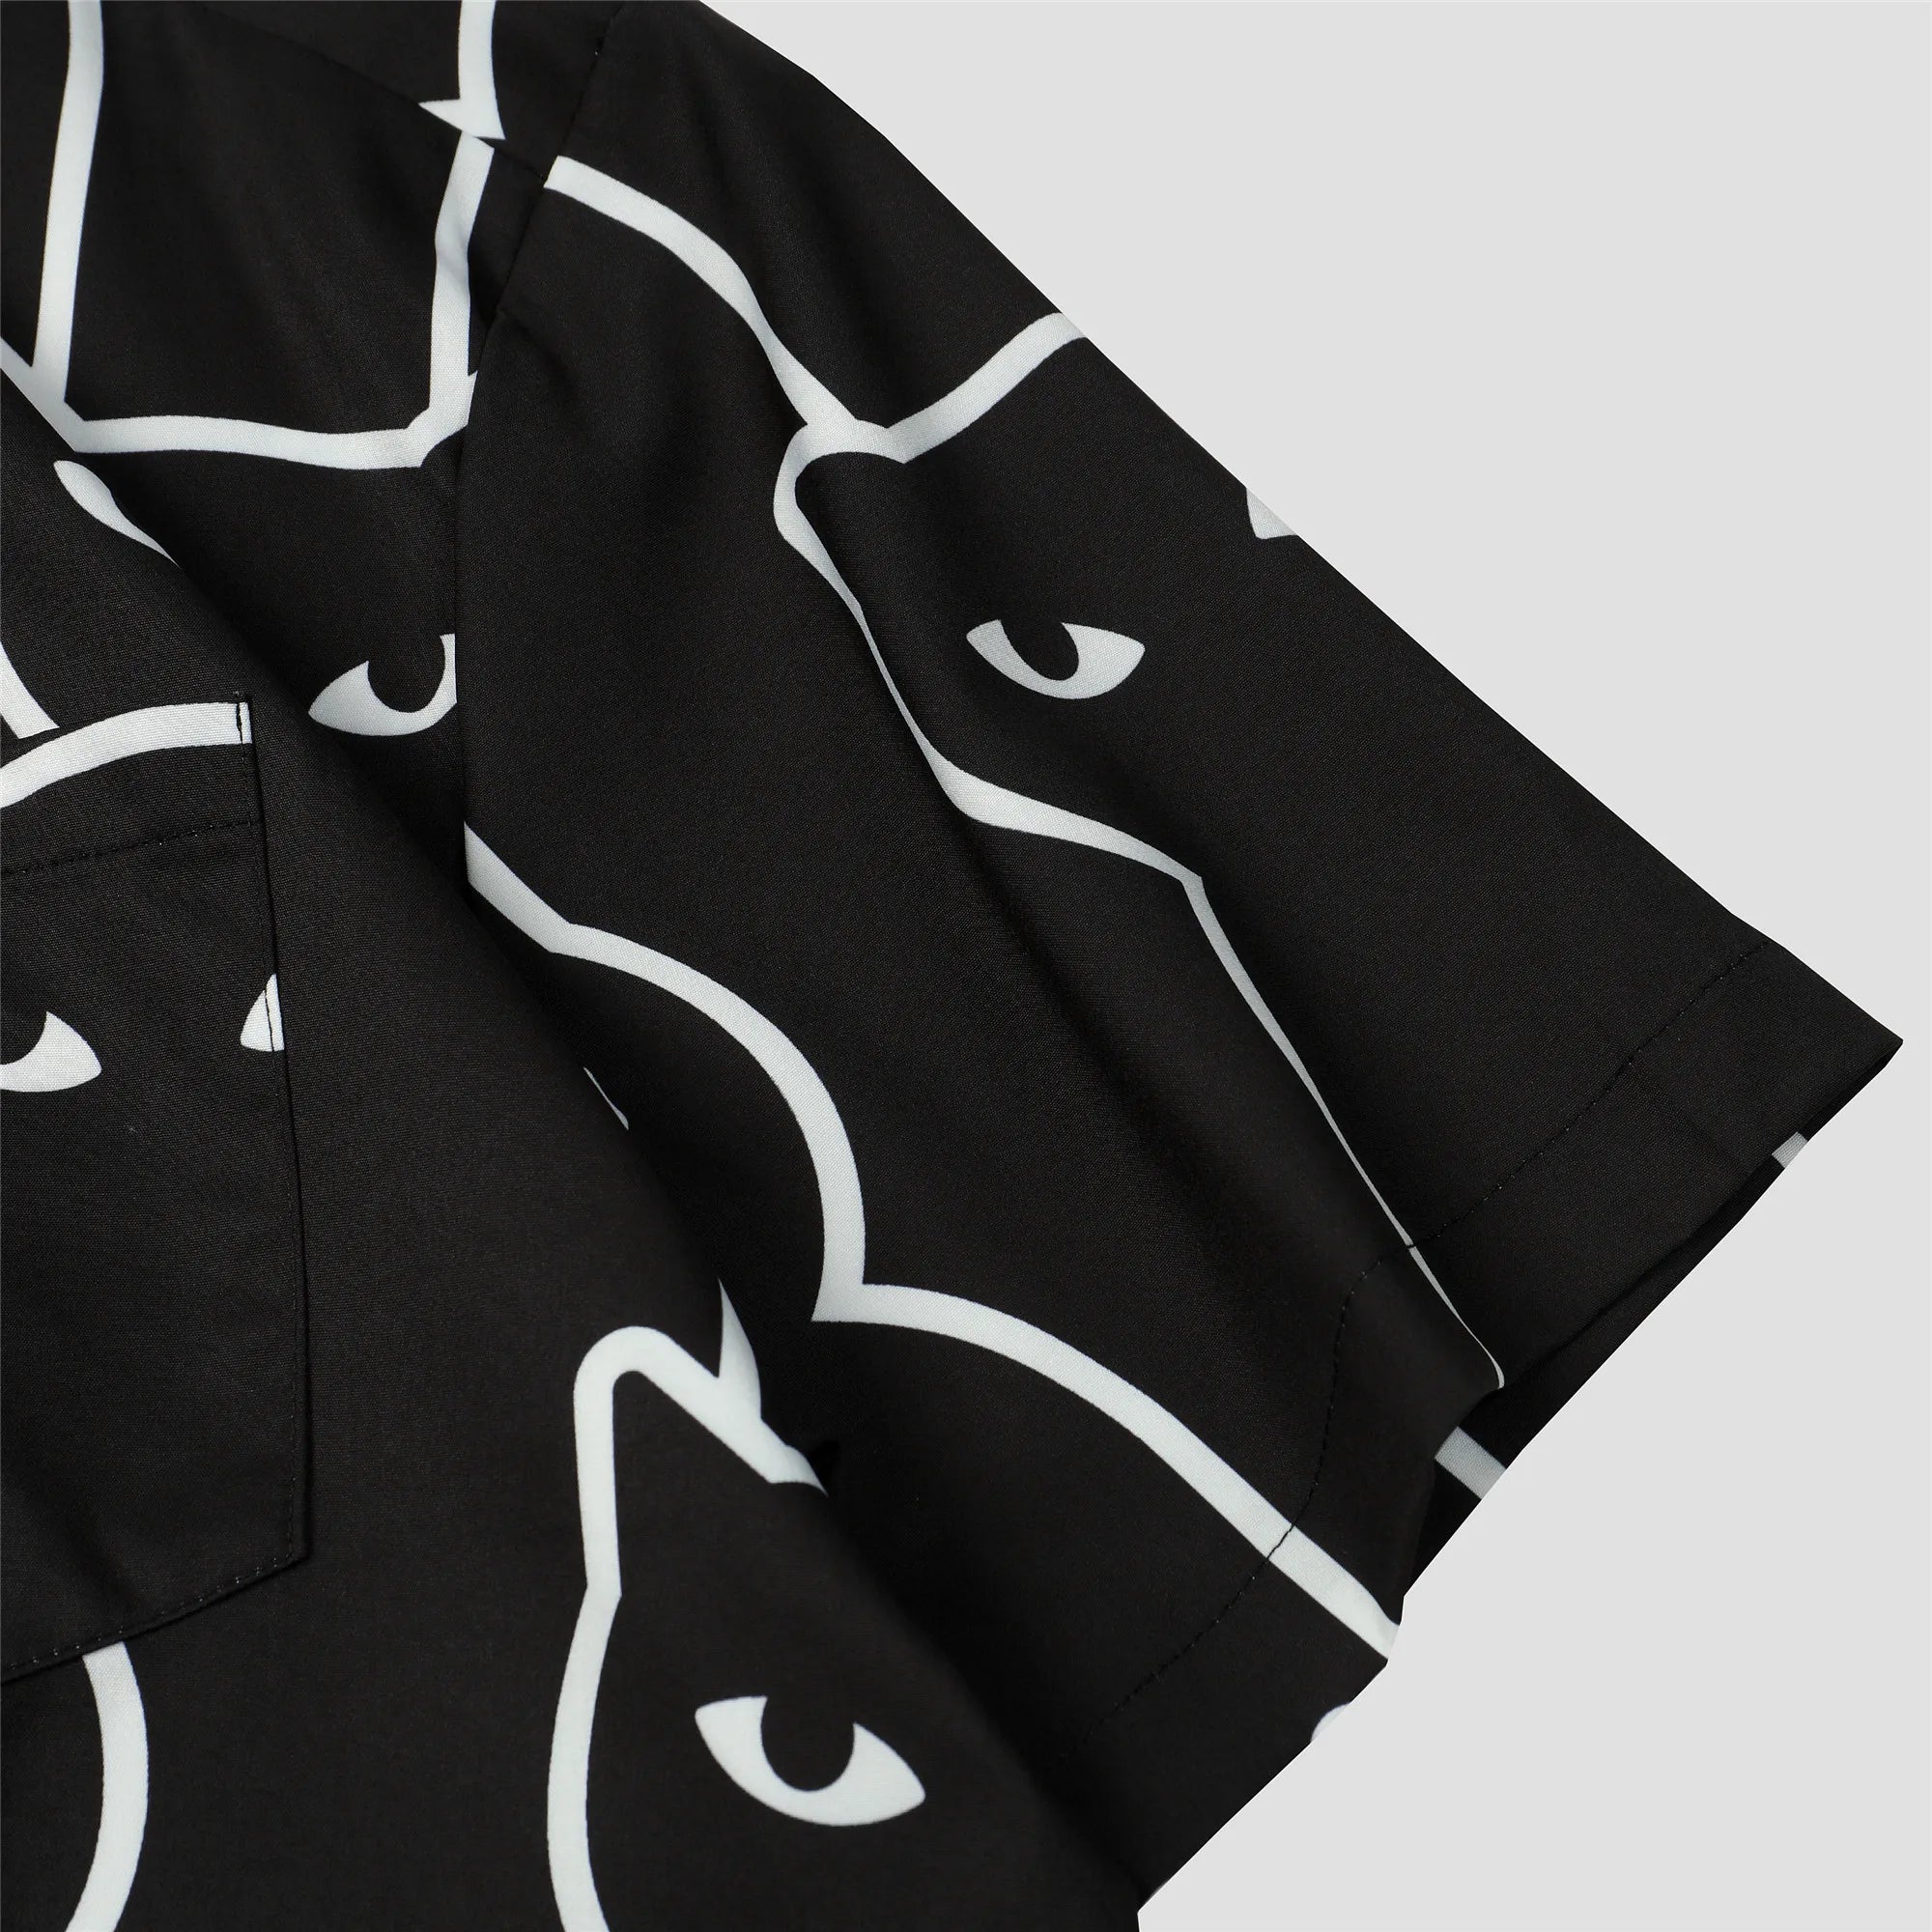 Black Cat Button Up Shirt - CatX Fiesta